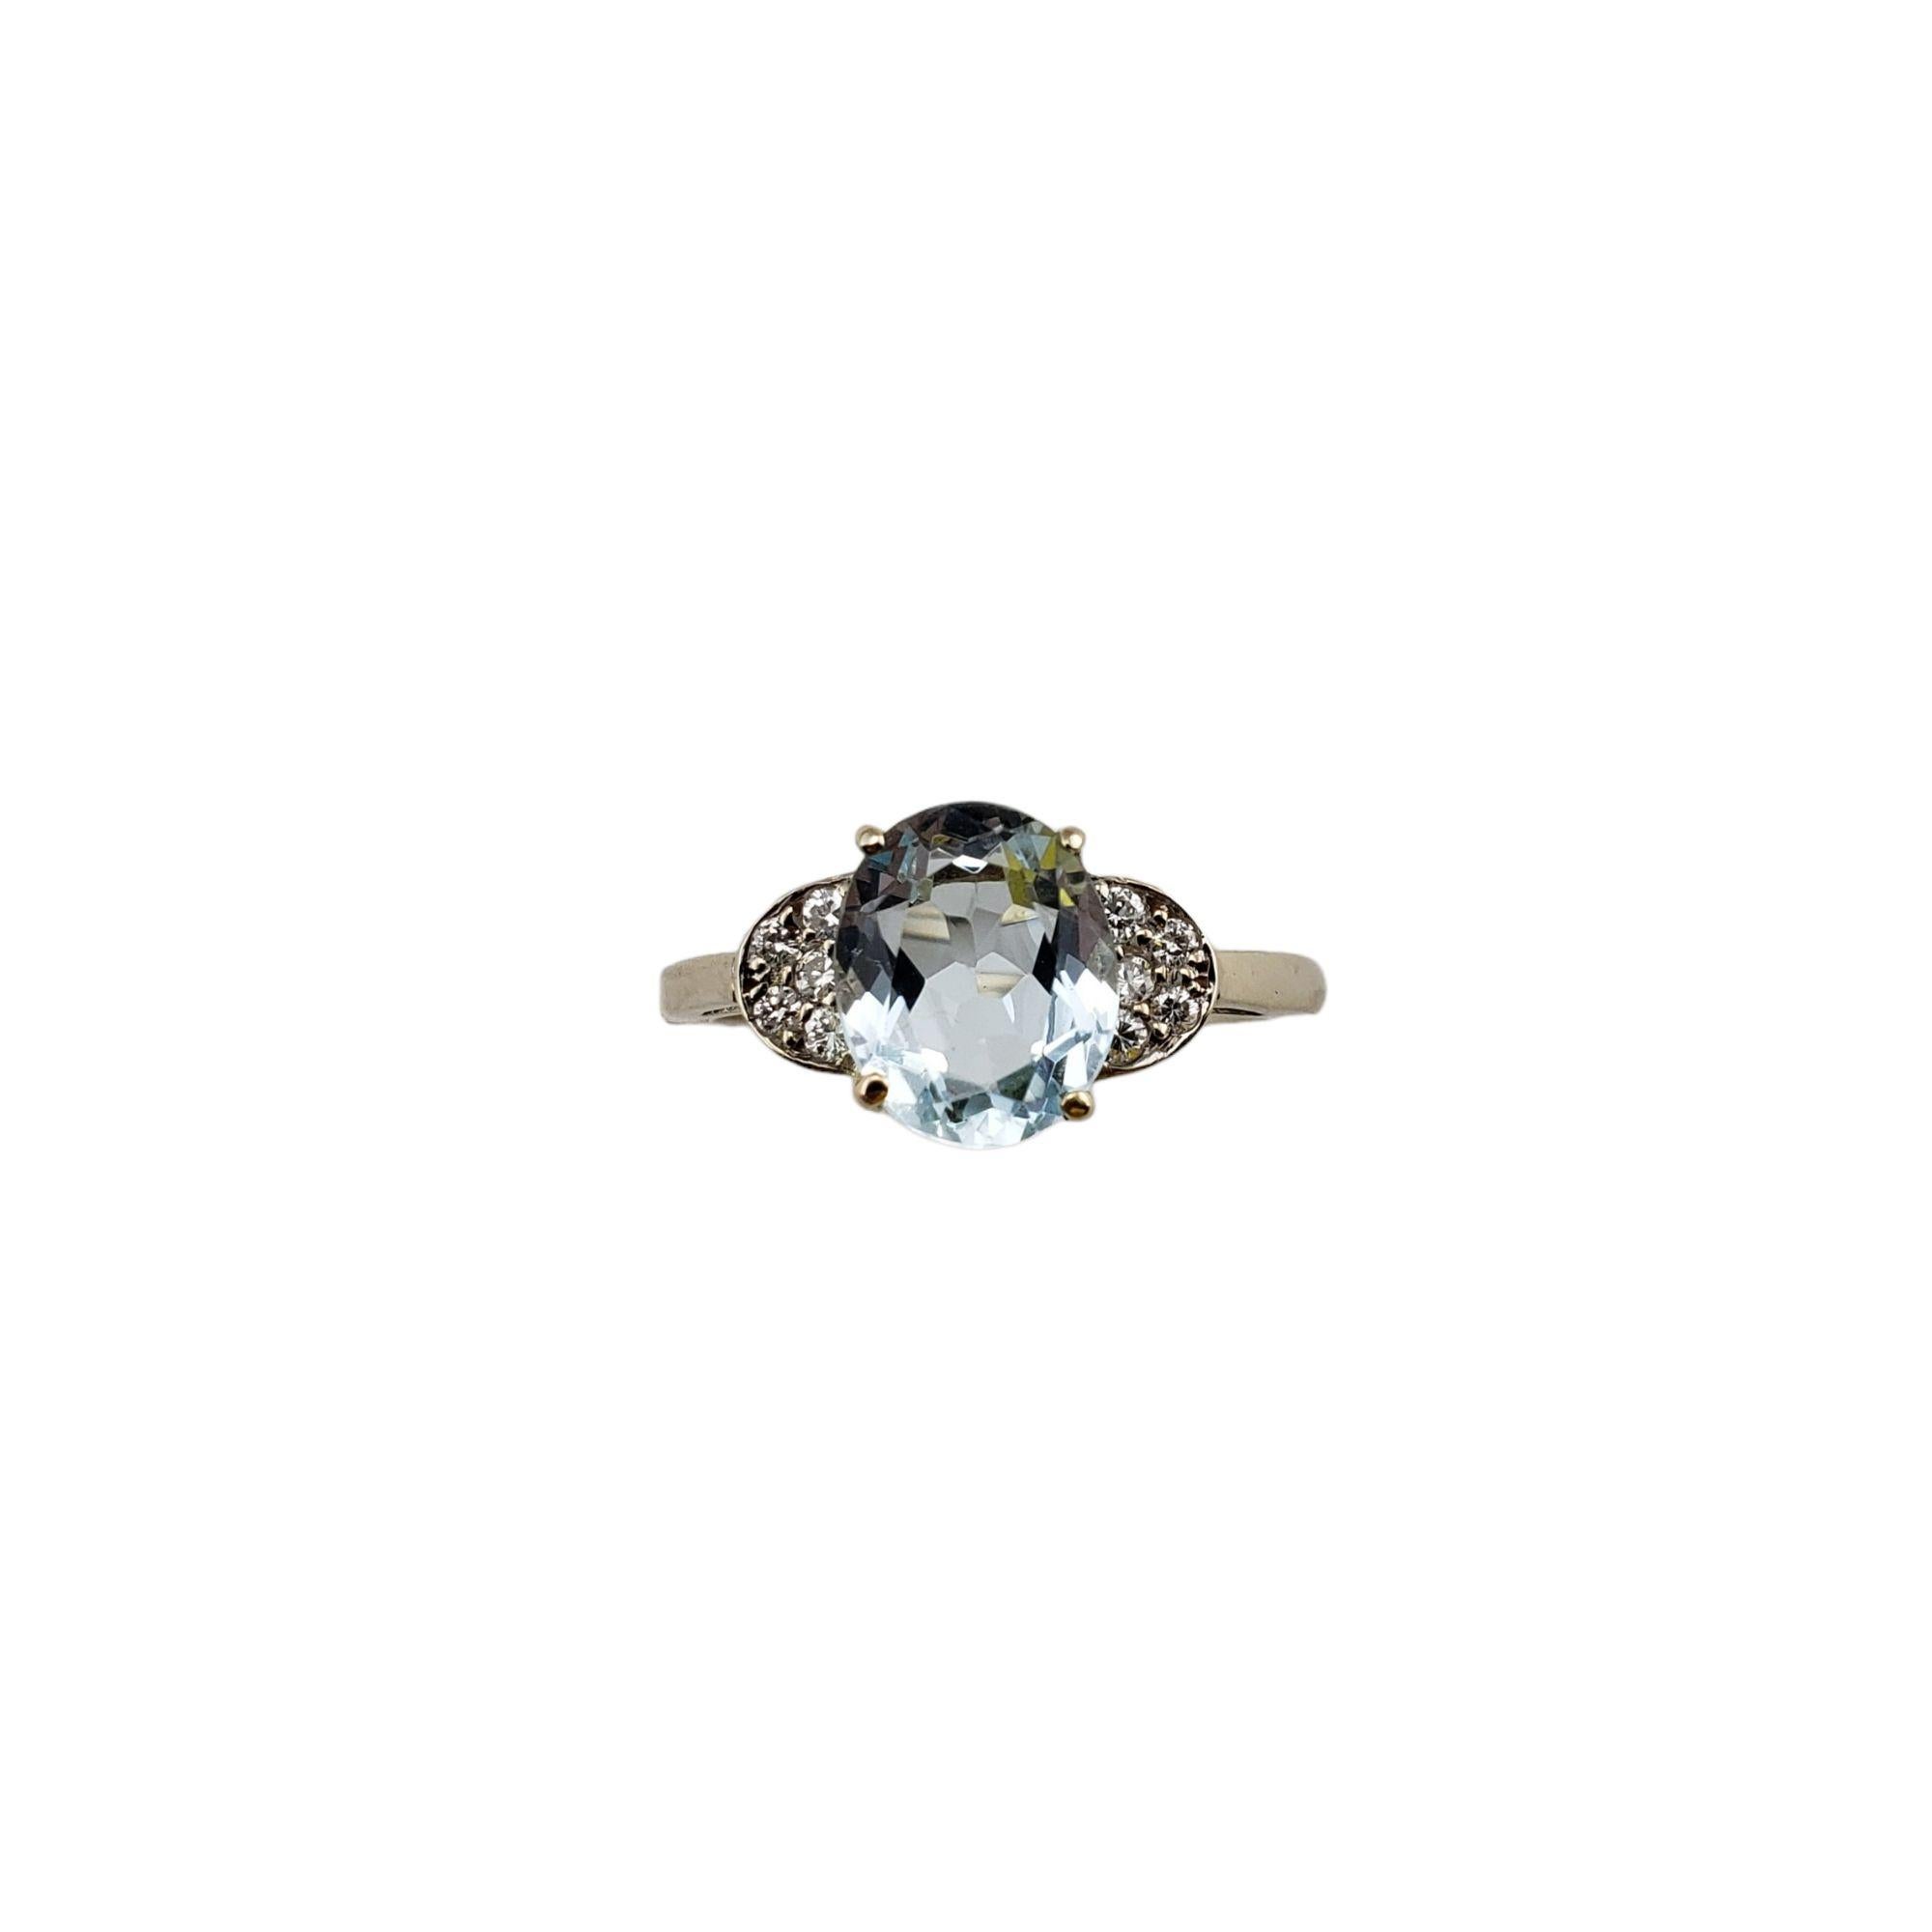 Vintage 14 Karat White Gold Aquamarine and Diamond Ring JAGi Certified Size 8.5-

Cette magnifique bague présente une aigue-marine ovale (10 mm x 8 mm) et dix diamants ronds de taille brillante sertis dans de l'or blanc classique 14K. Tige : 1.5